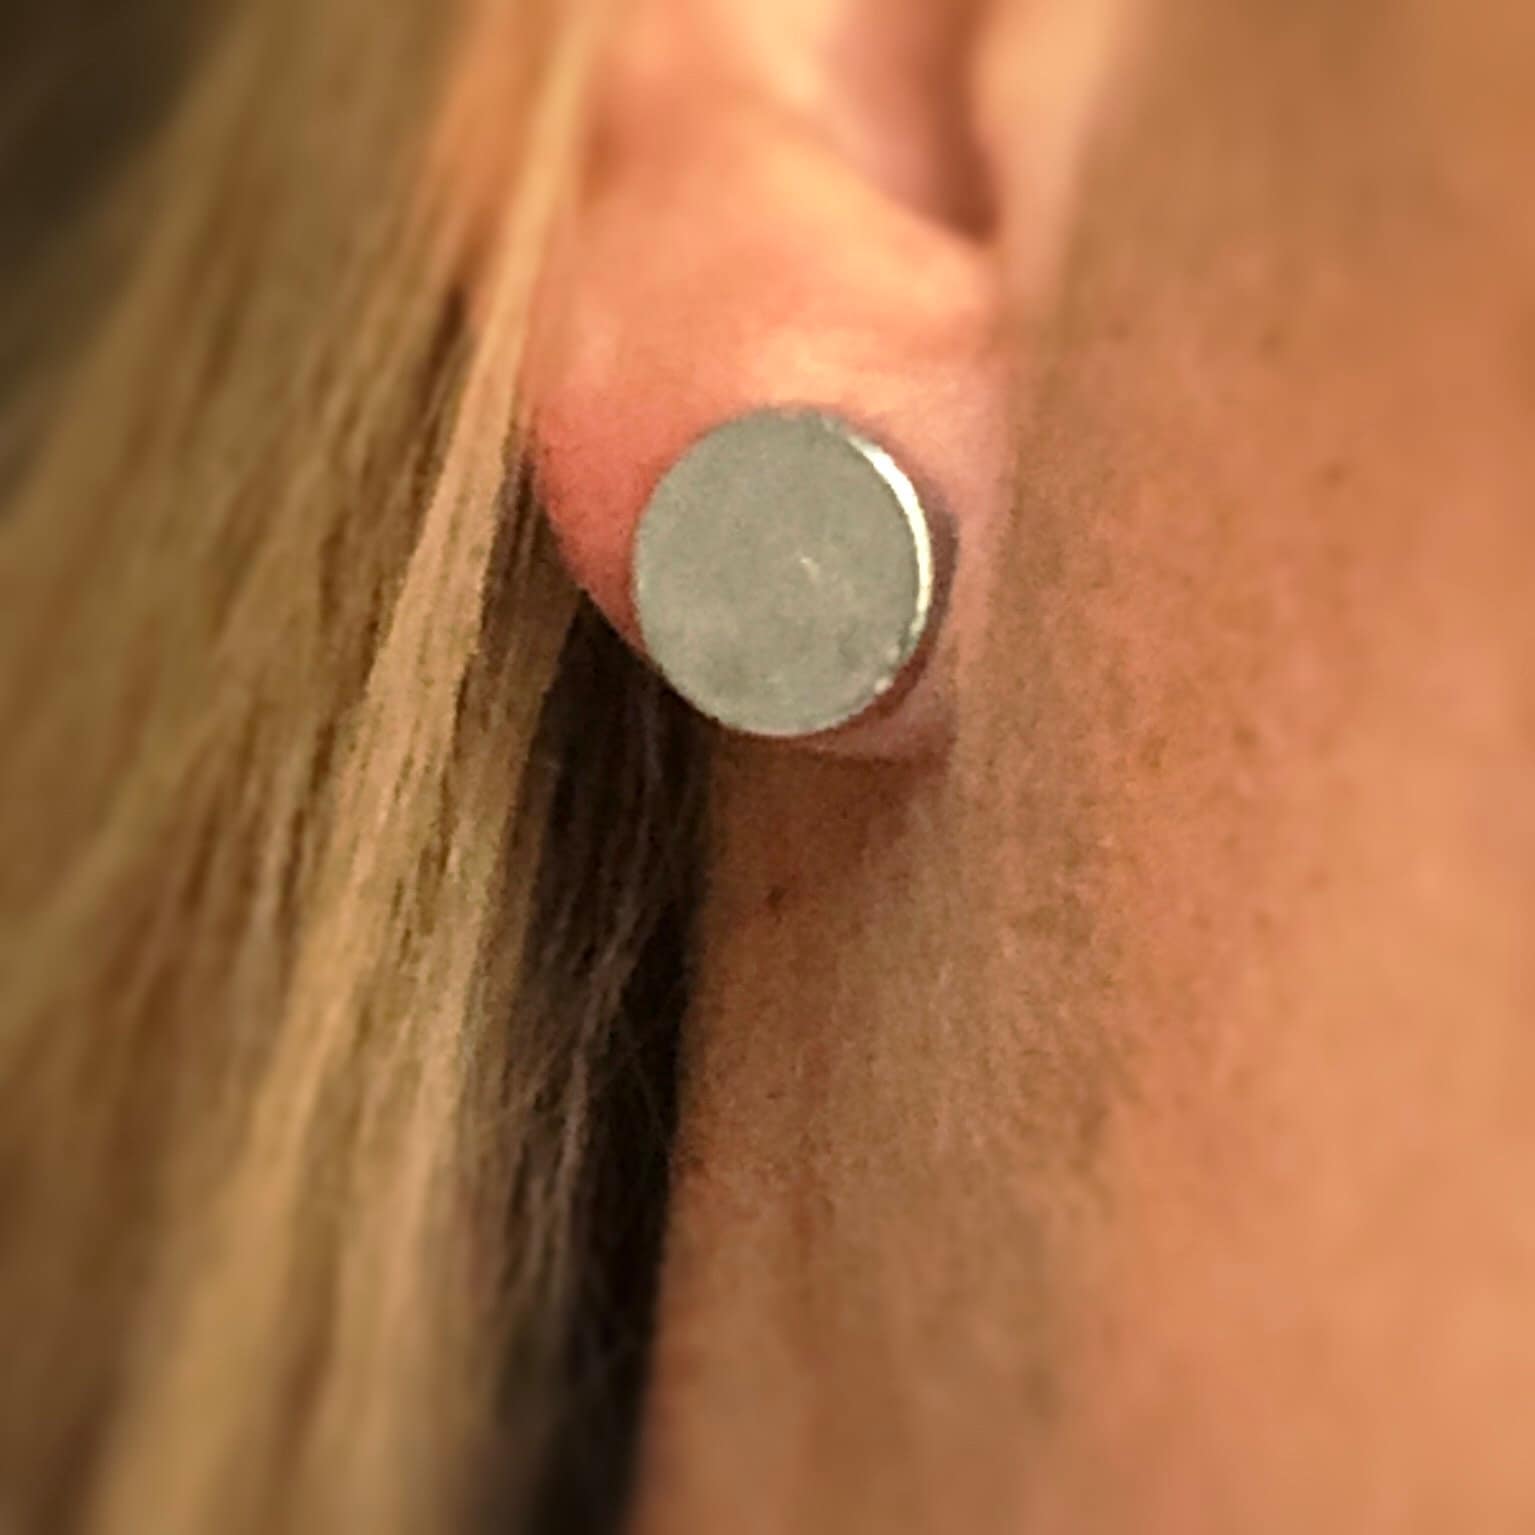 Gold keloid pressure earrings • Magnetic earrings clip on ear rings • Cheloid compression earring • Post Op treatment keloid scars • Magnet